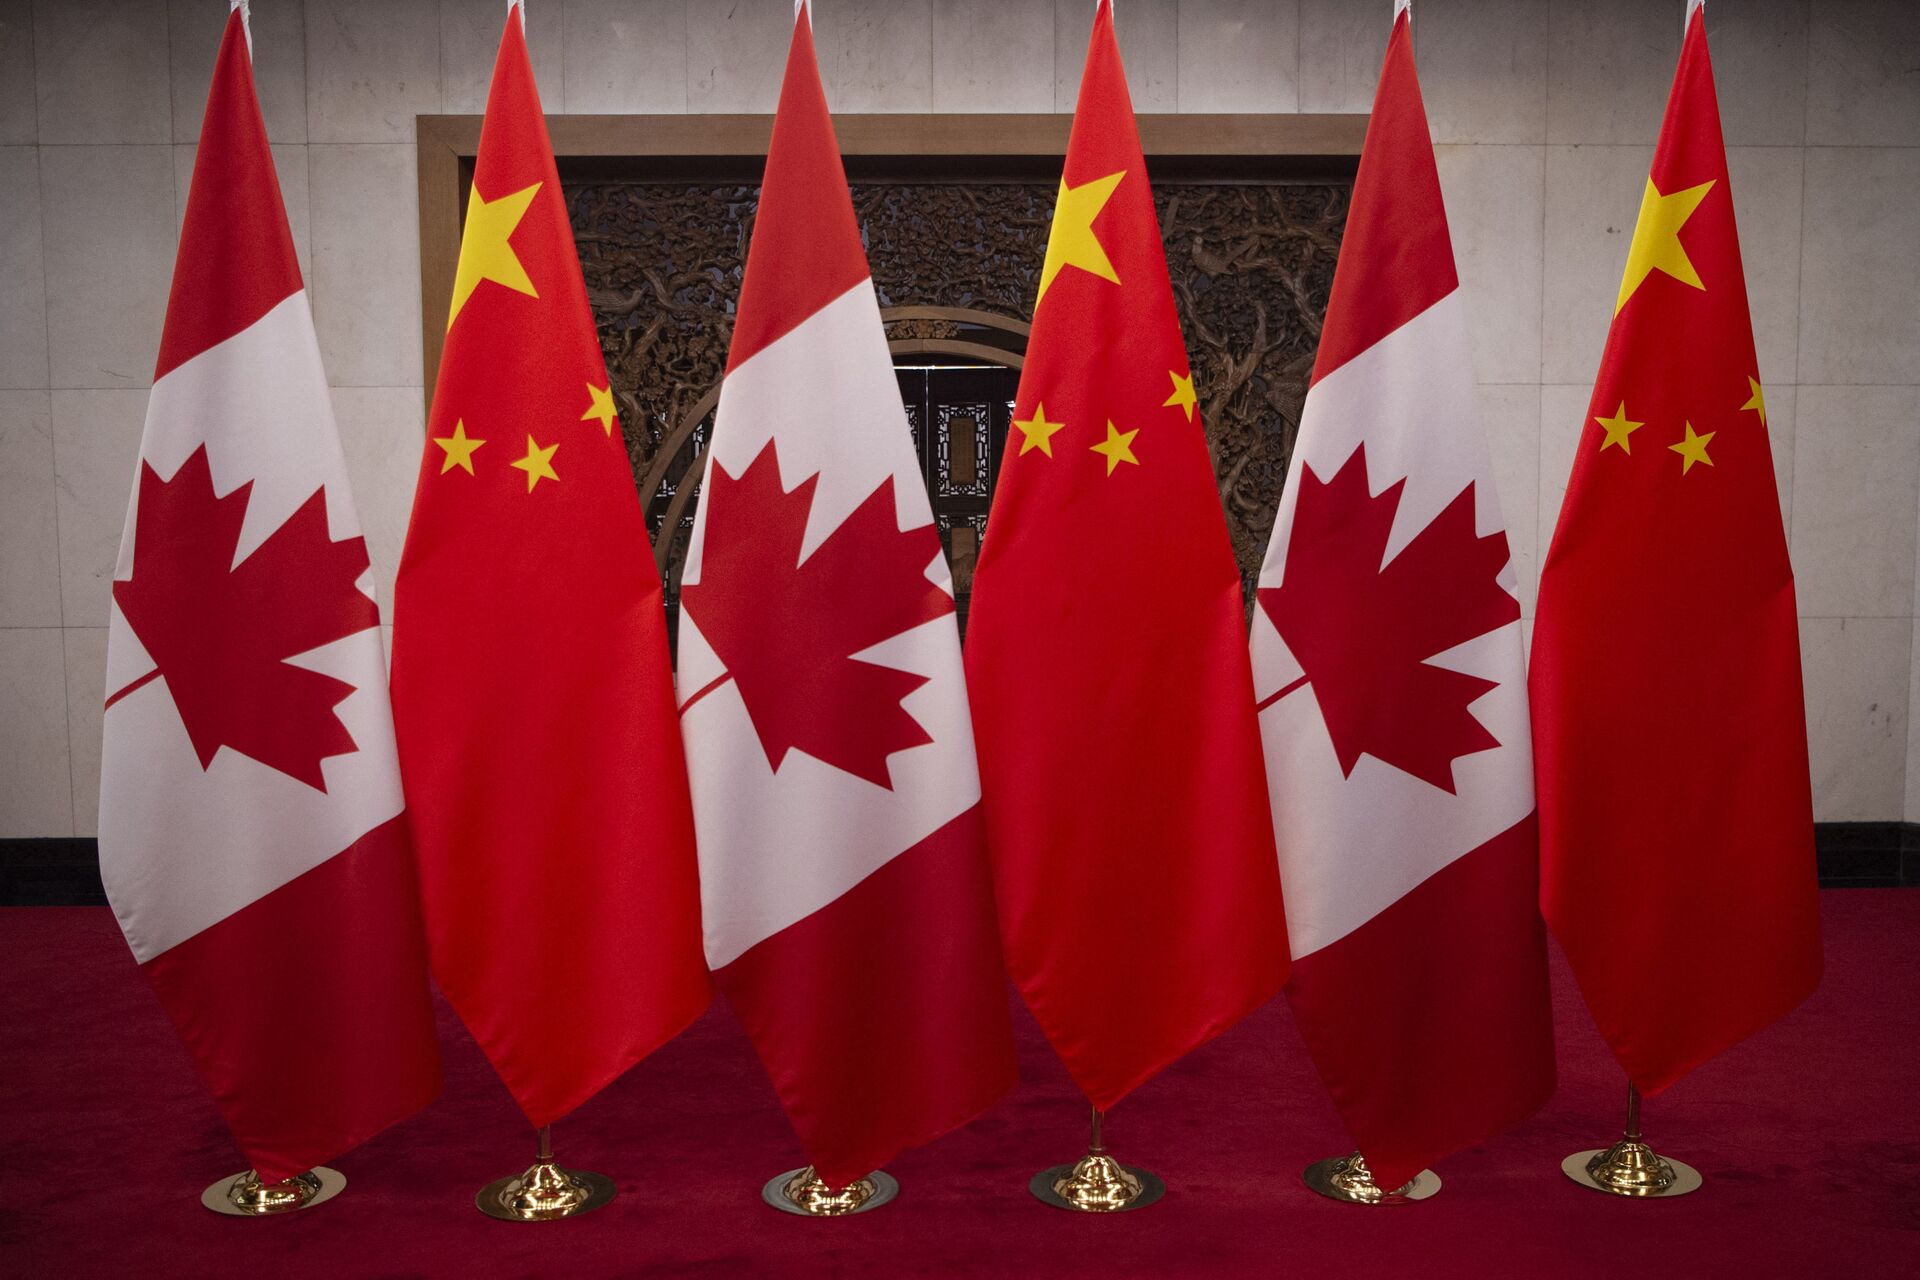 Canadá: legisladores declaram que China está cometendo genocídio, mas Trudeau se abstém - Sputnik Brasil, 1920, 23.02.2021